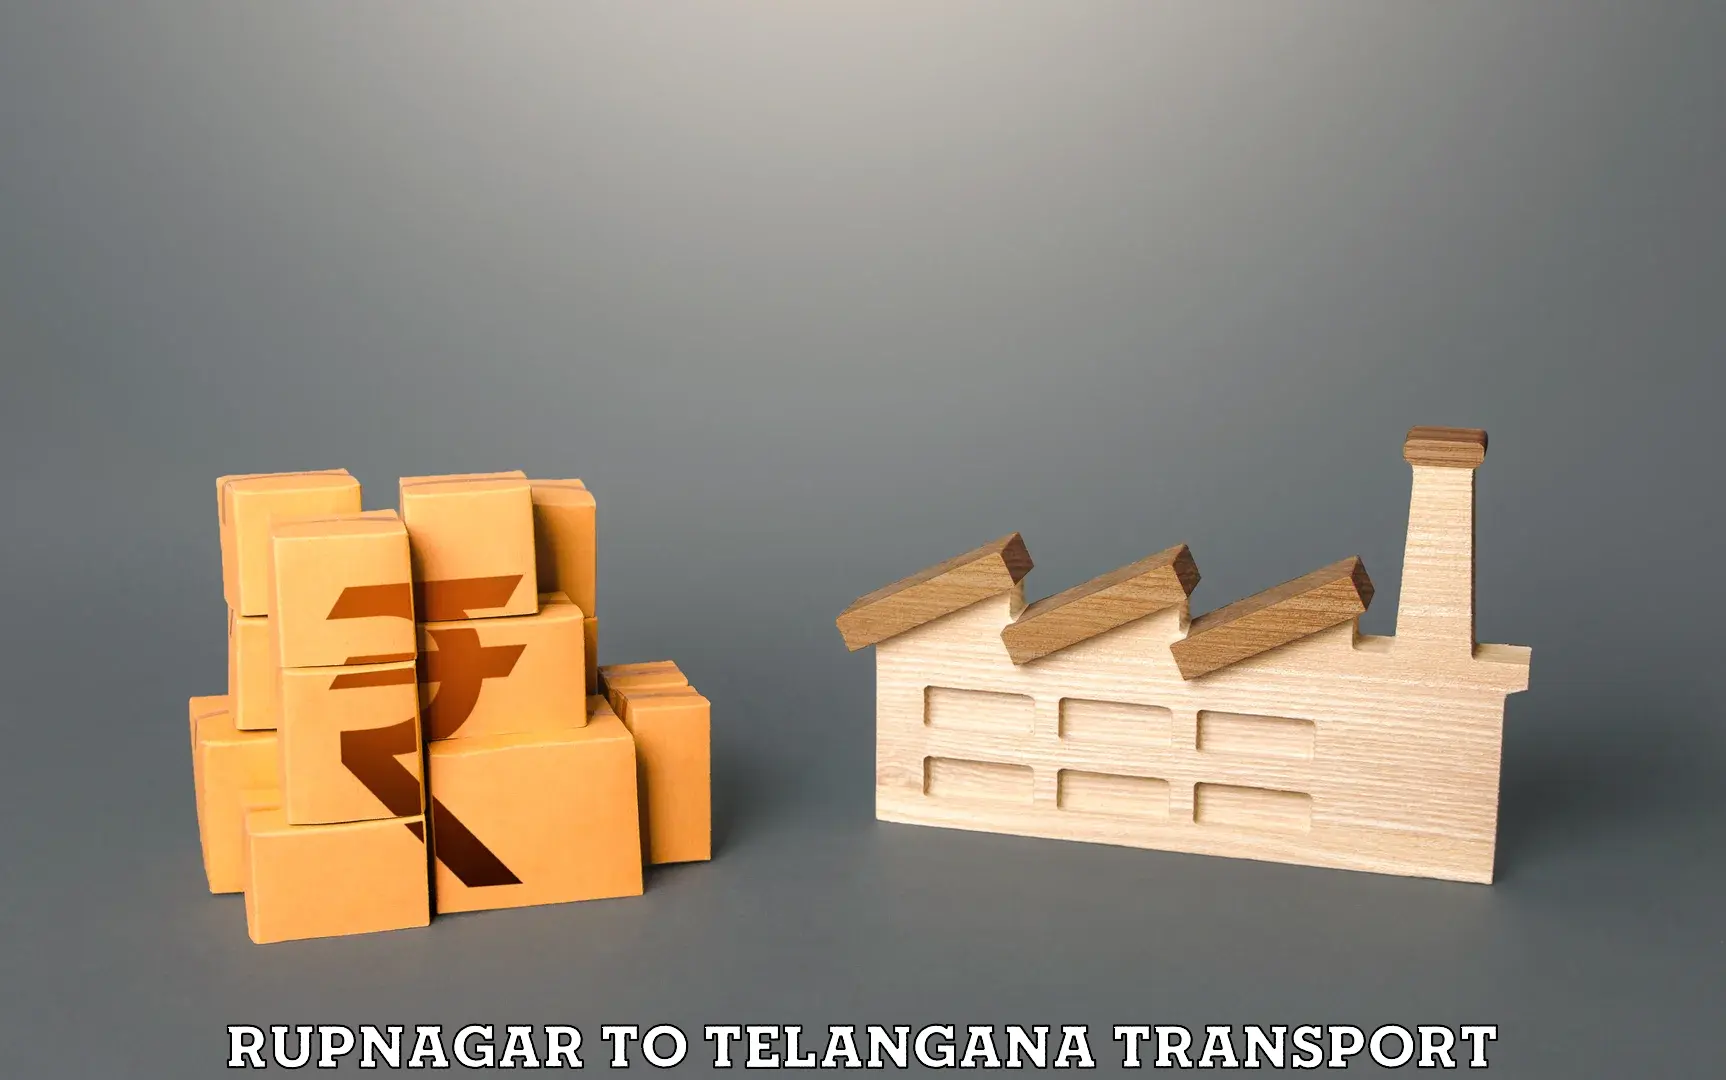 Bike transport service Rupnagar to Telangana